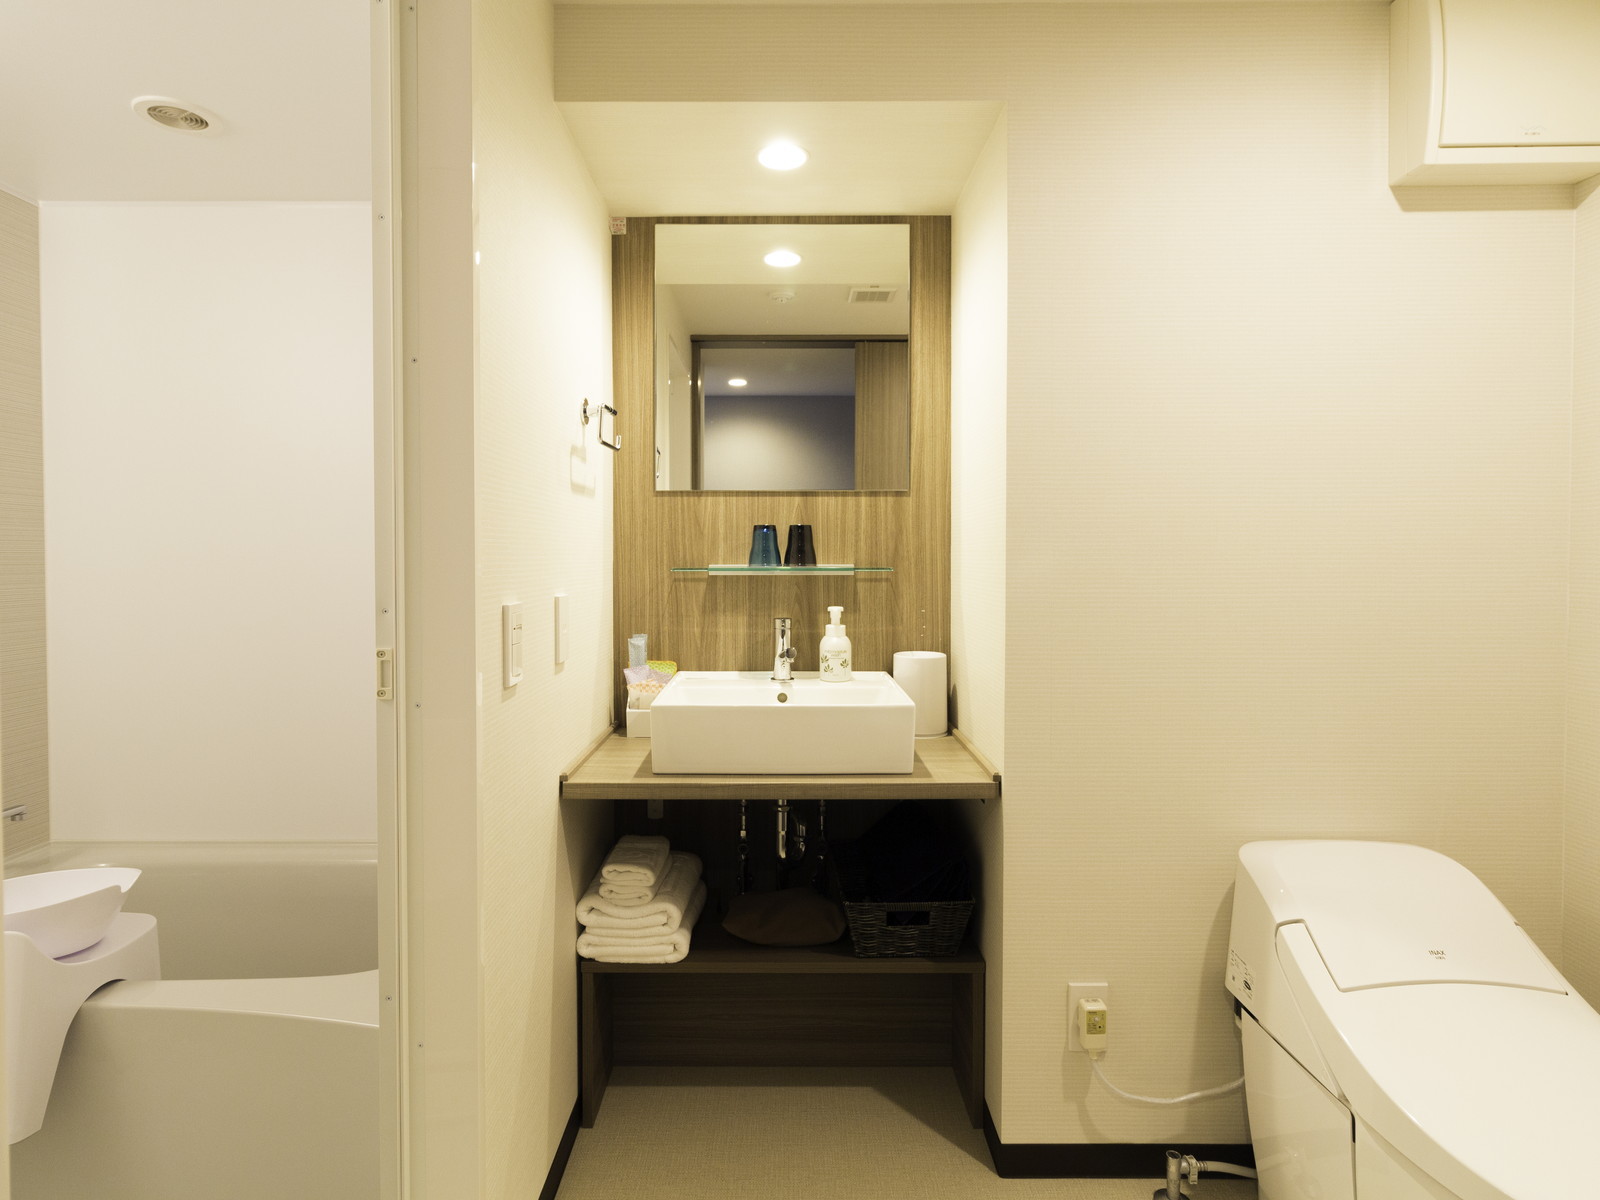 一体型バス&トイレ(バスルームとトイレは一つの入り口から※部屋によって若干配置等が異なります